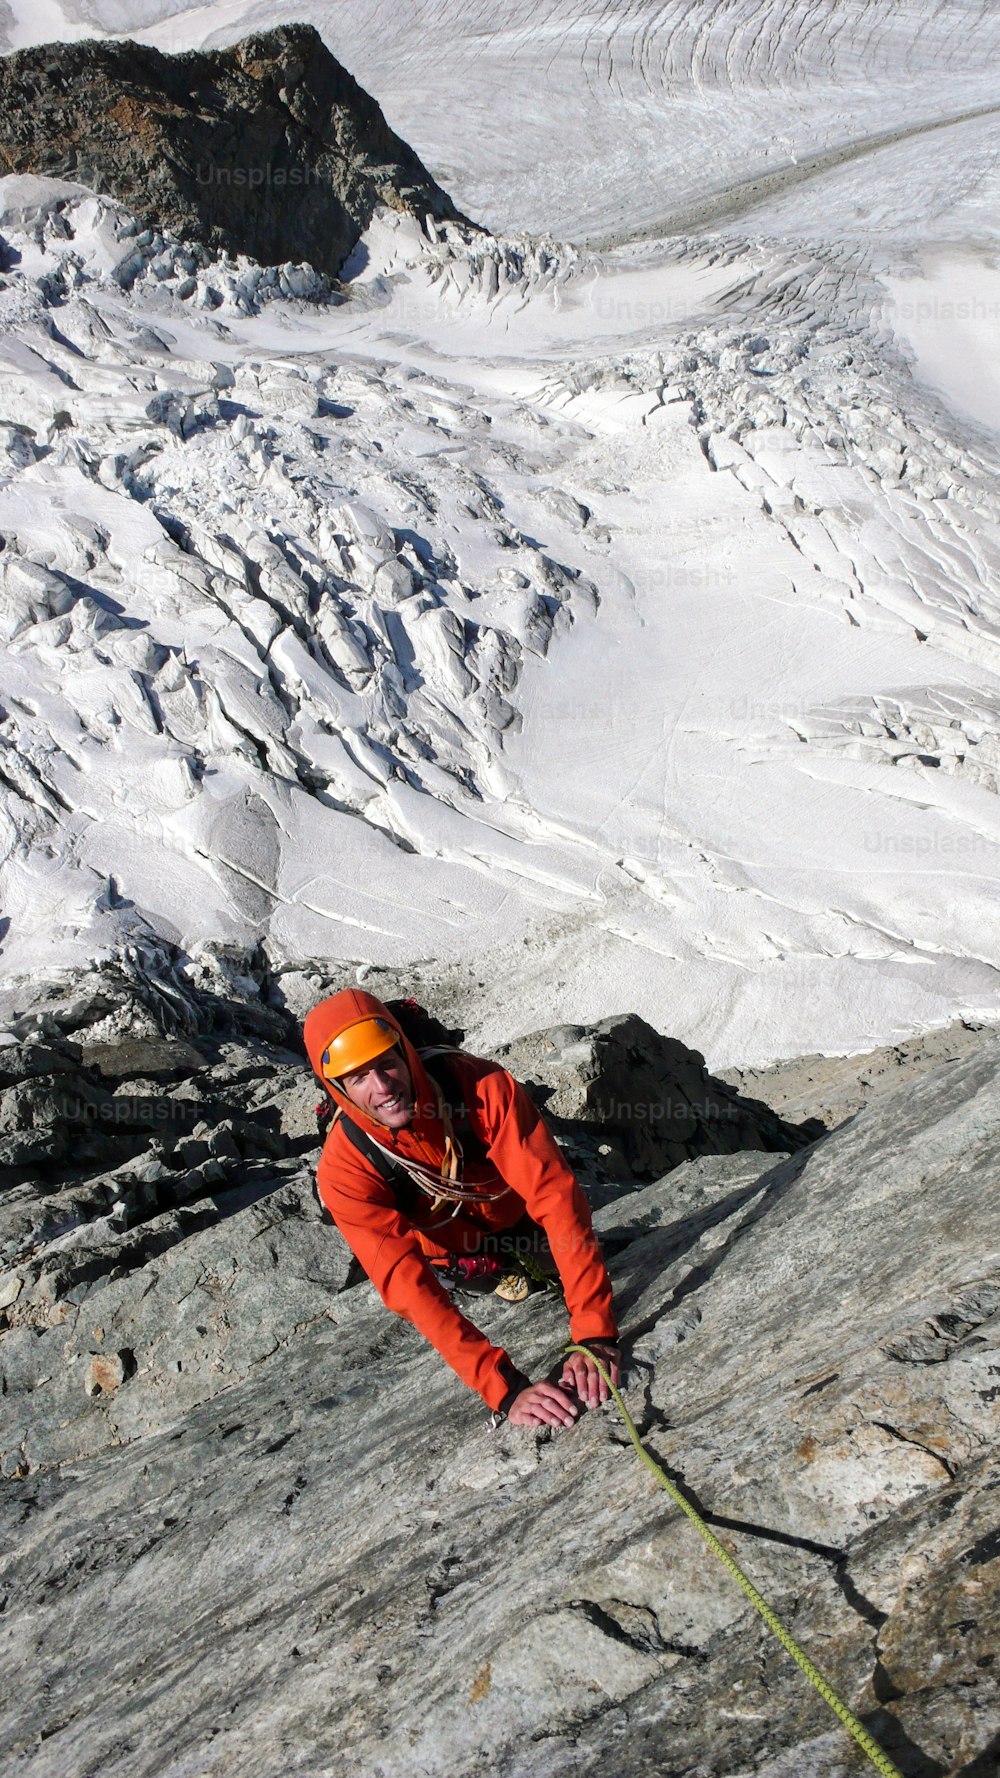 alpinista masculino en una ruta de escalada expuesta por encima de un glaciar en los Alpes suizos cerca de St. Moritz